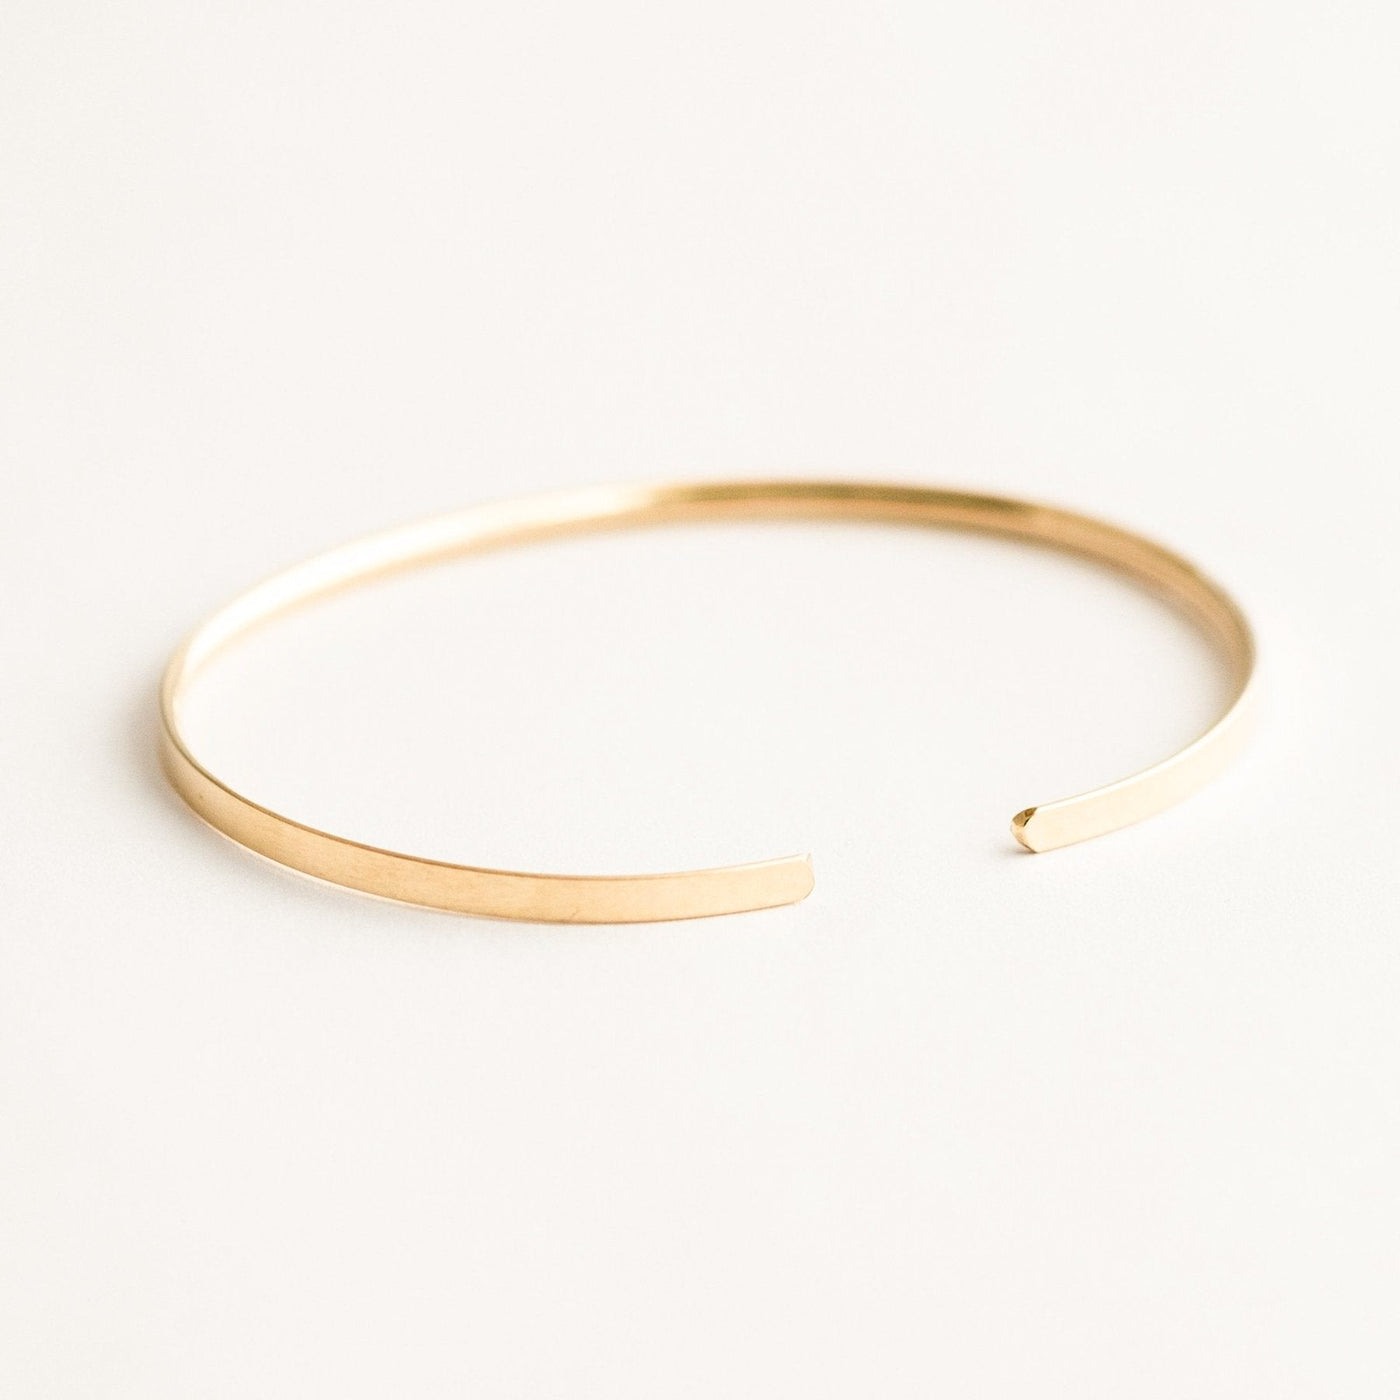 Minimal Cuff Bracelet by Simple & Dainty Jewelry